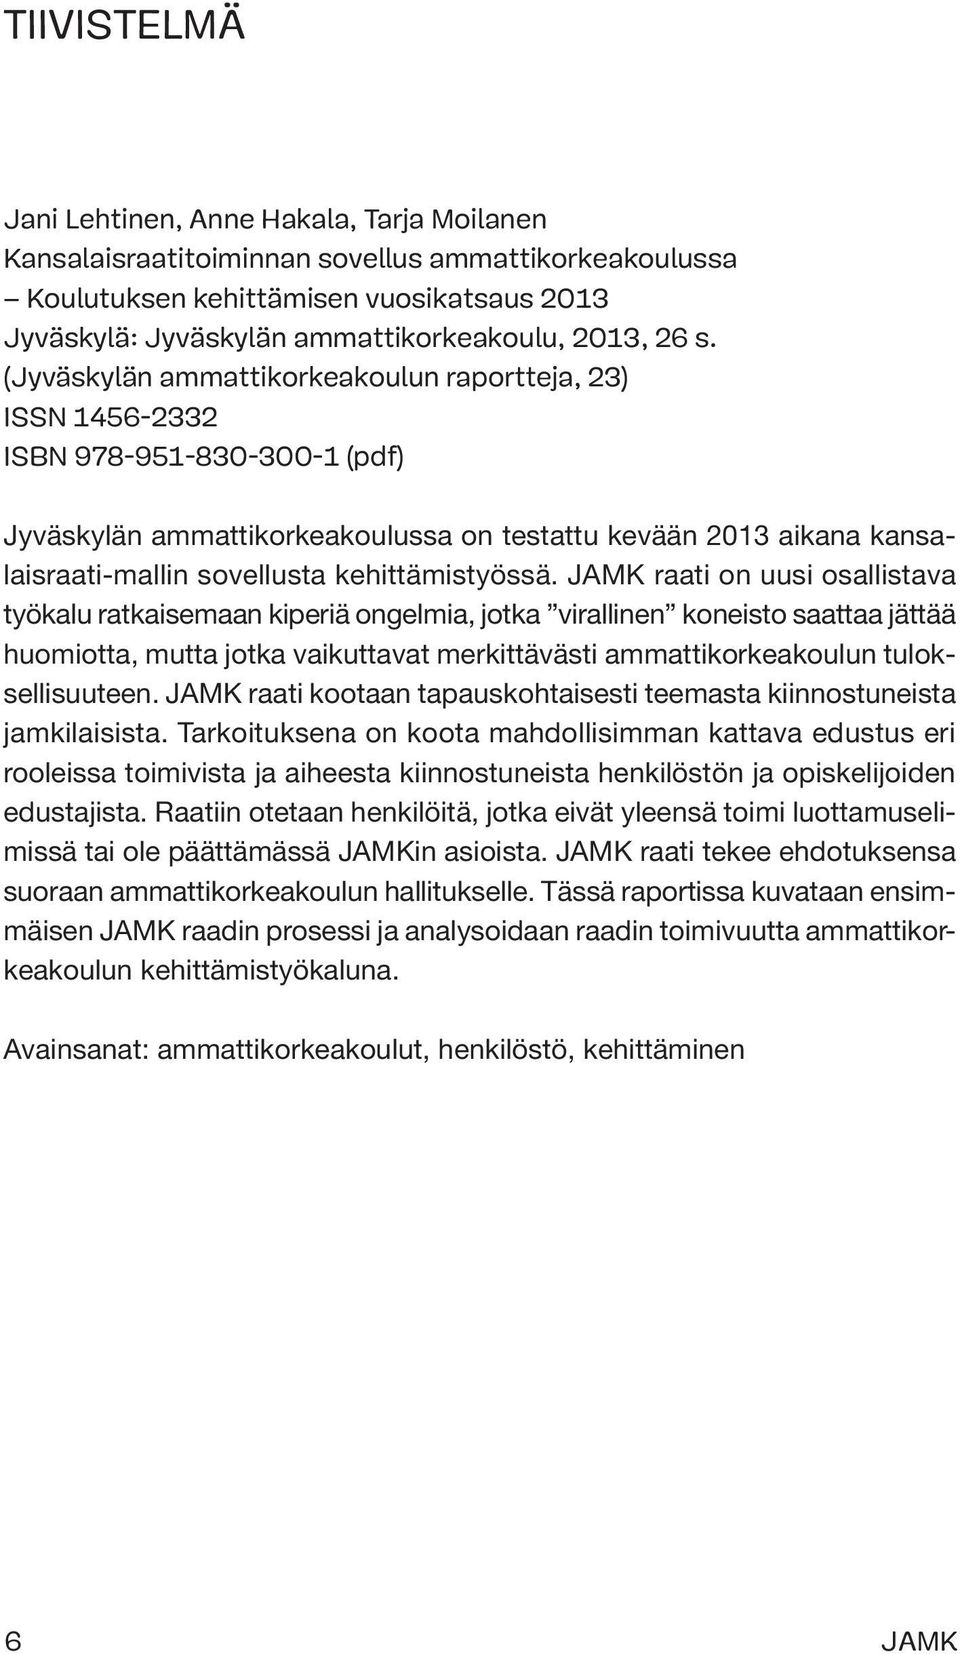 (Jyväskylän ammattikorkeakoulun raportteja, 23) ISSN 1456-2332 ISBN 978-951-830-300-1 (pdf) Jyväskylän ammattikorkeakoulussa on testattu kevään 2013 aikana kansalaisraati-mallin sovellusta